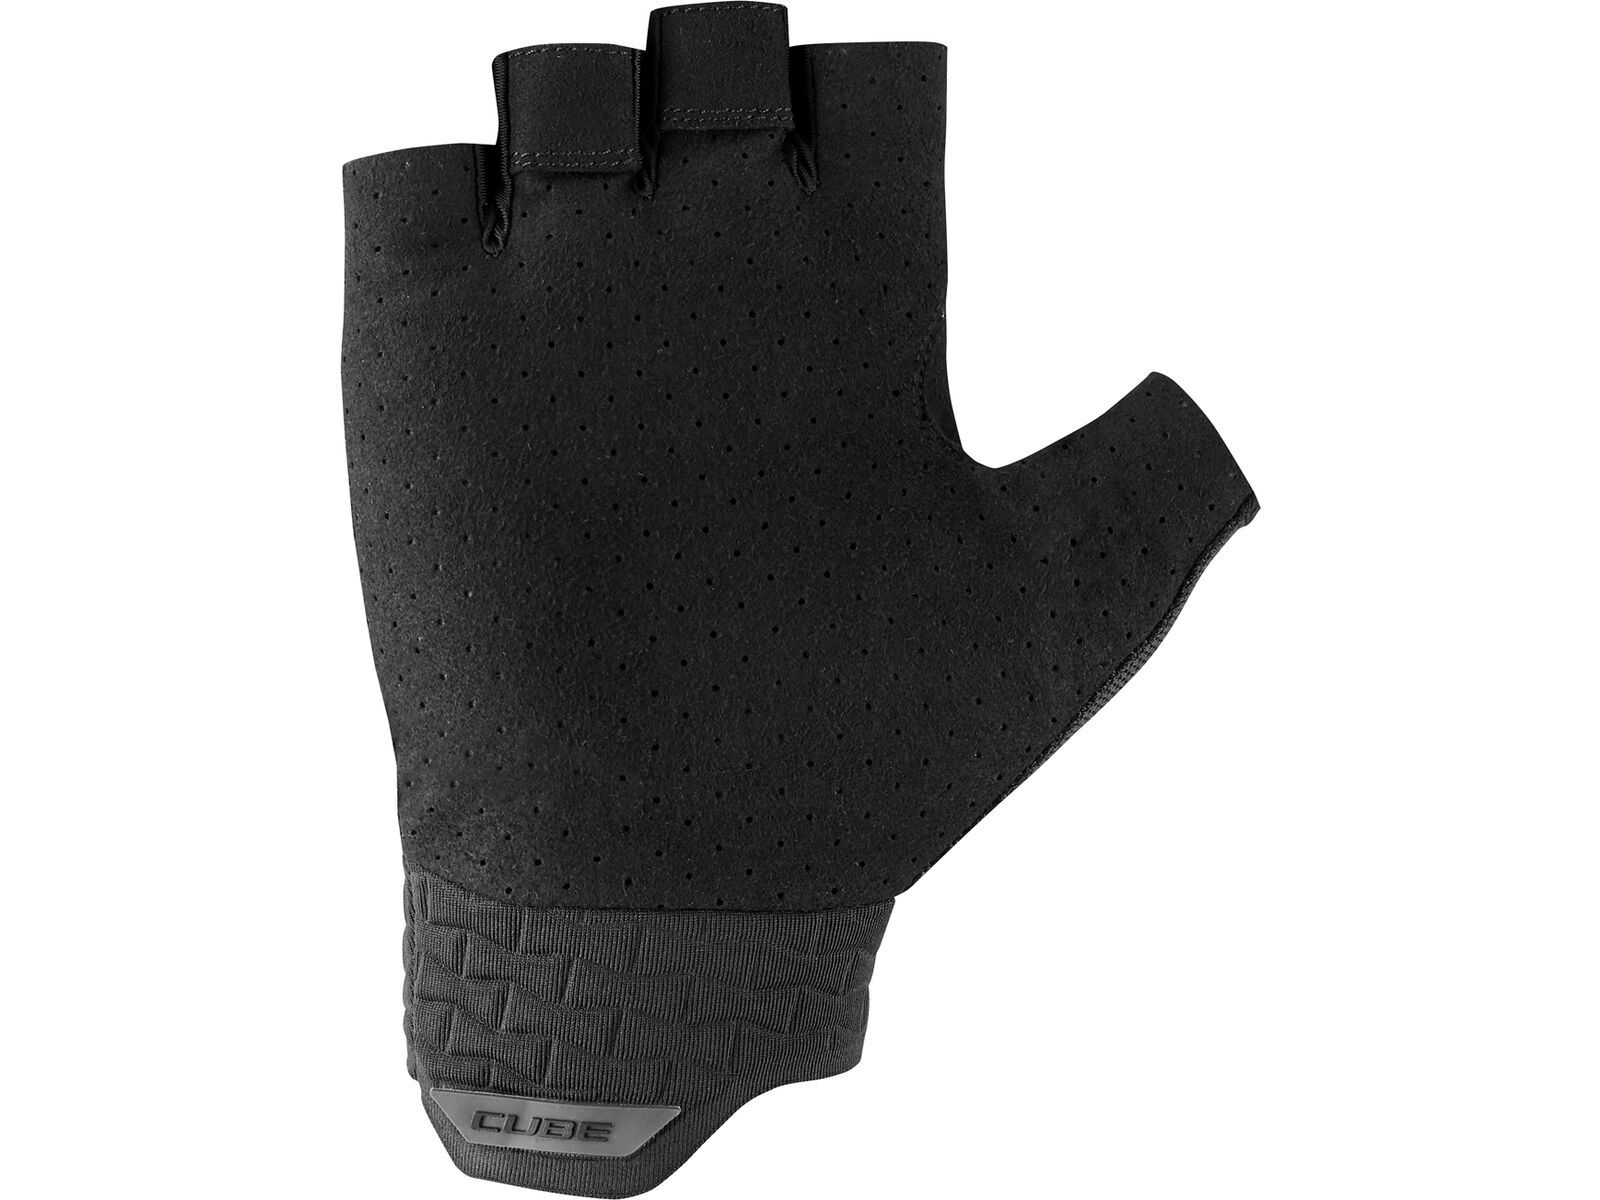 Cube Handschuhe Performance Kurzfinger, black | Bild 2